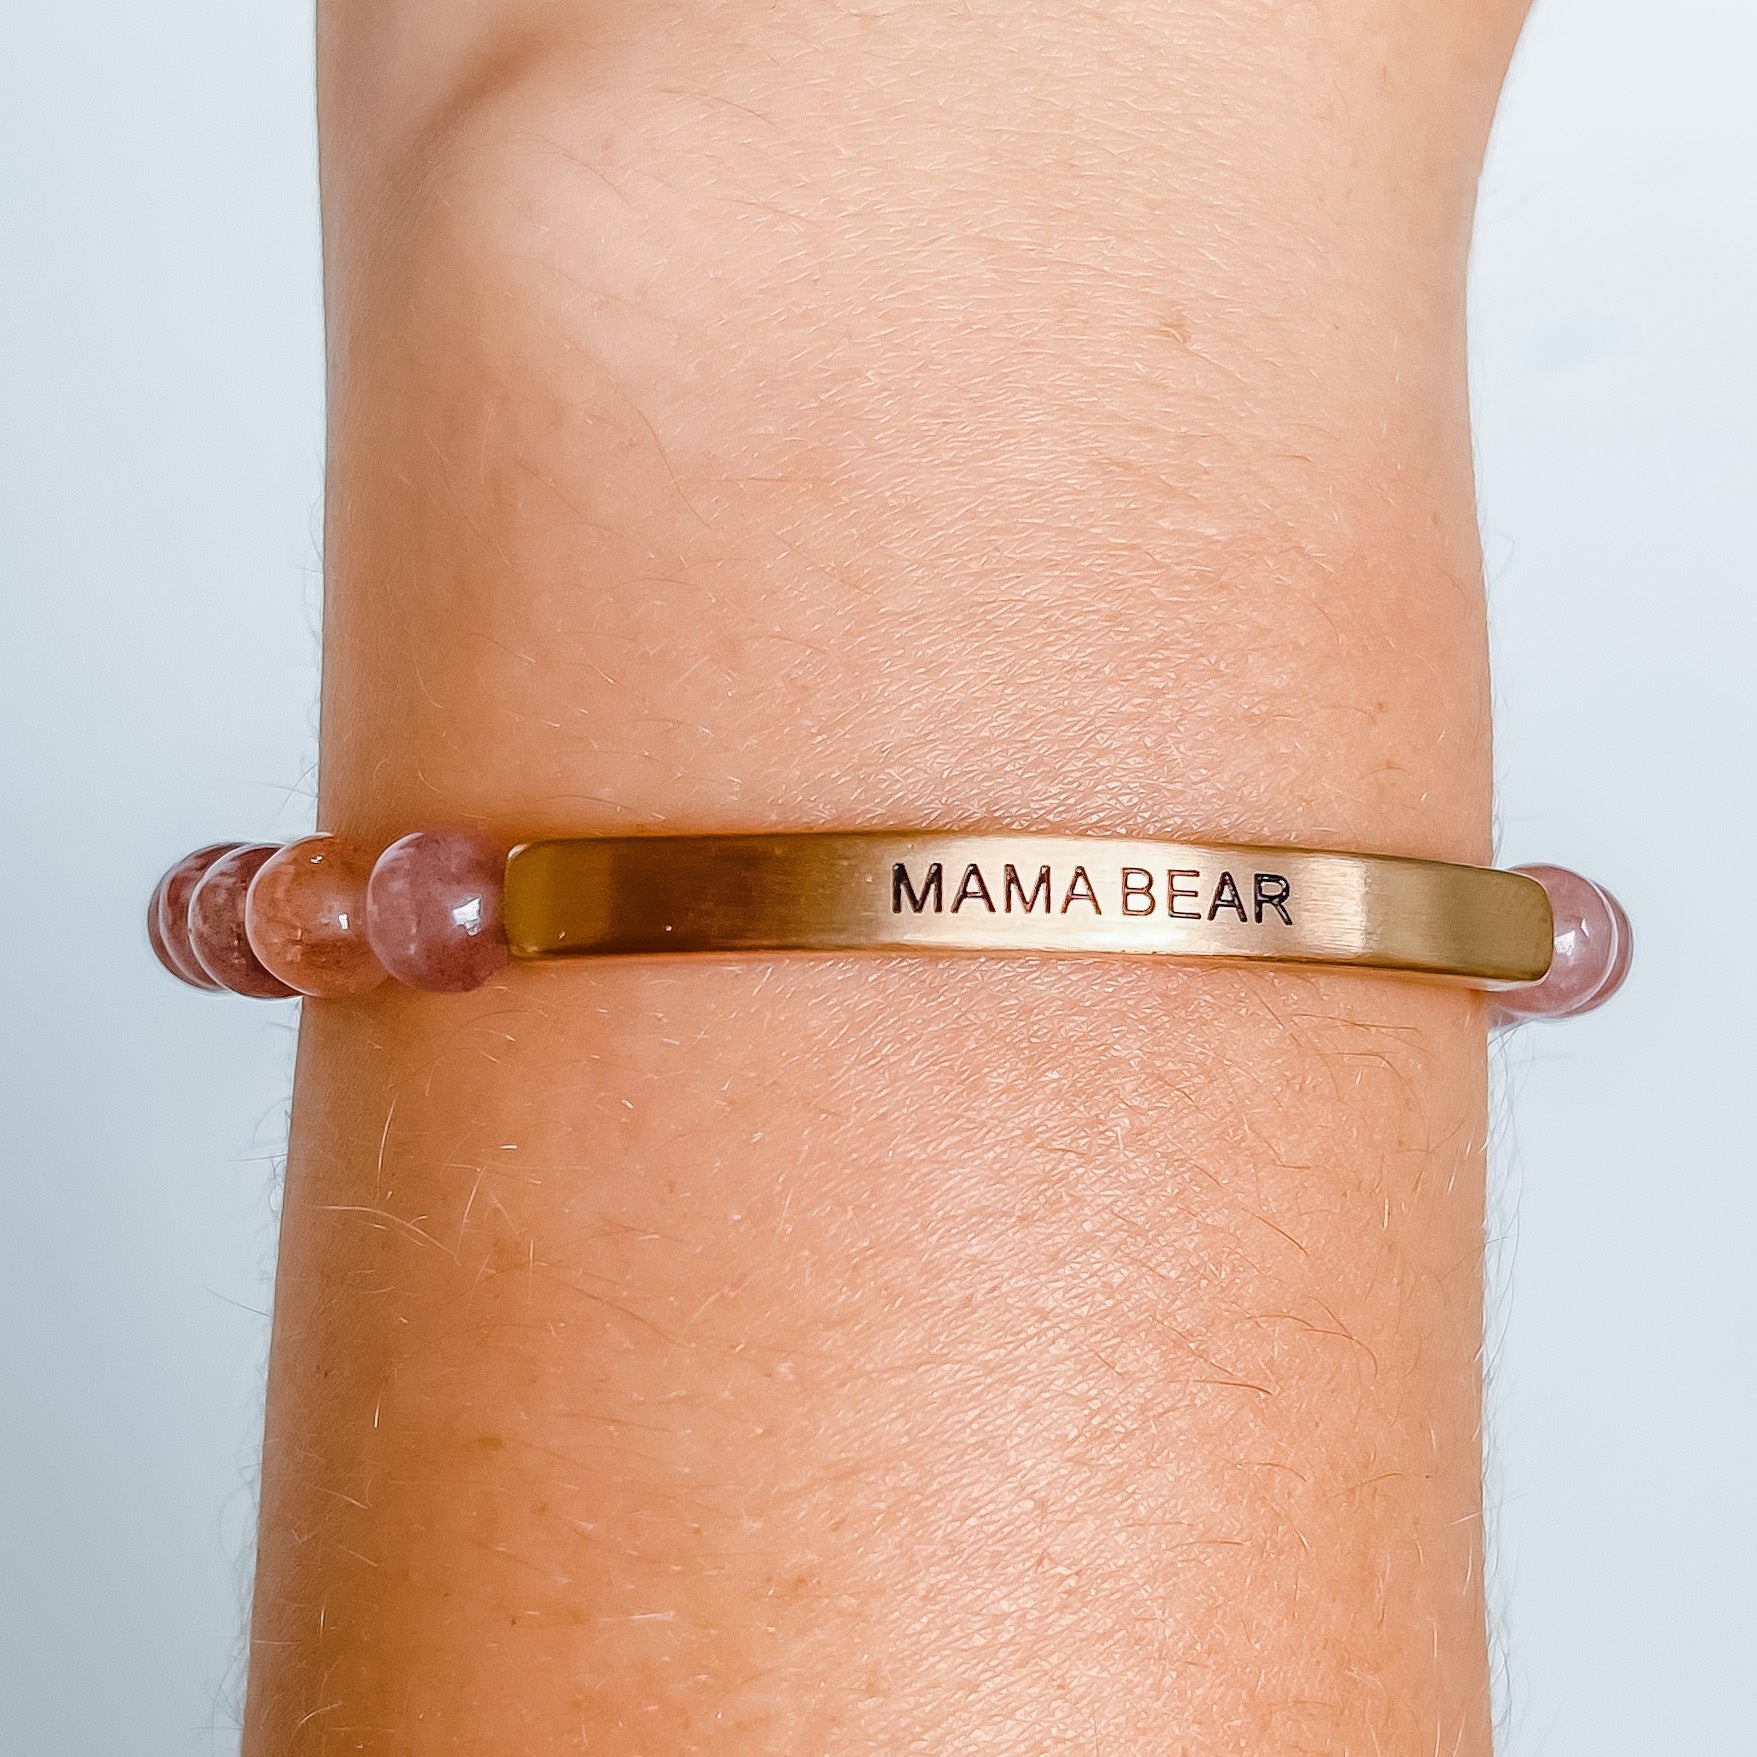 MAMA BEAR - Inspiration Co.